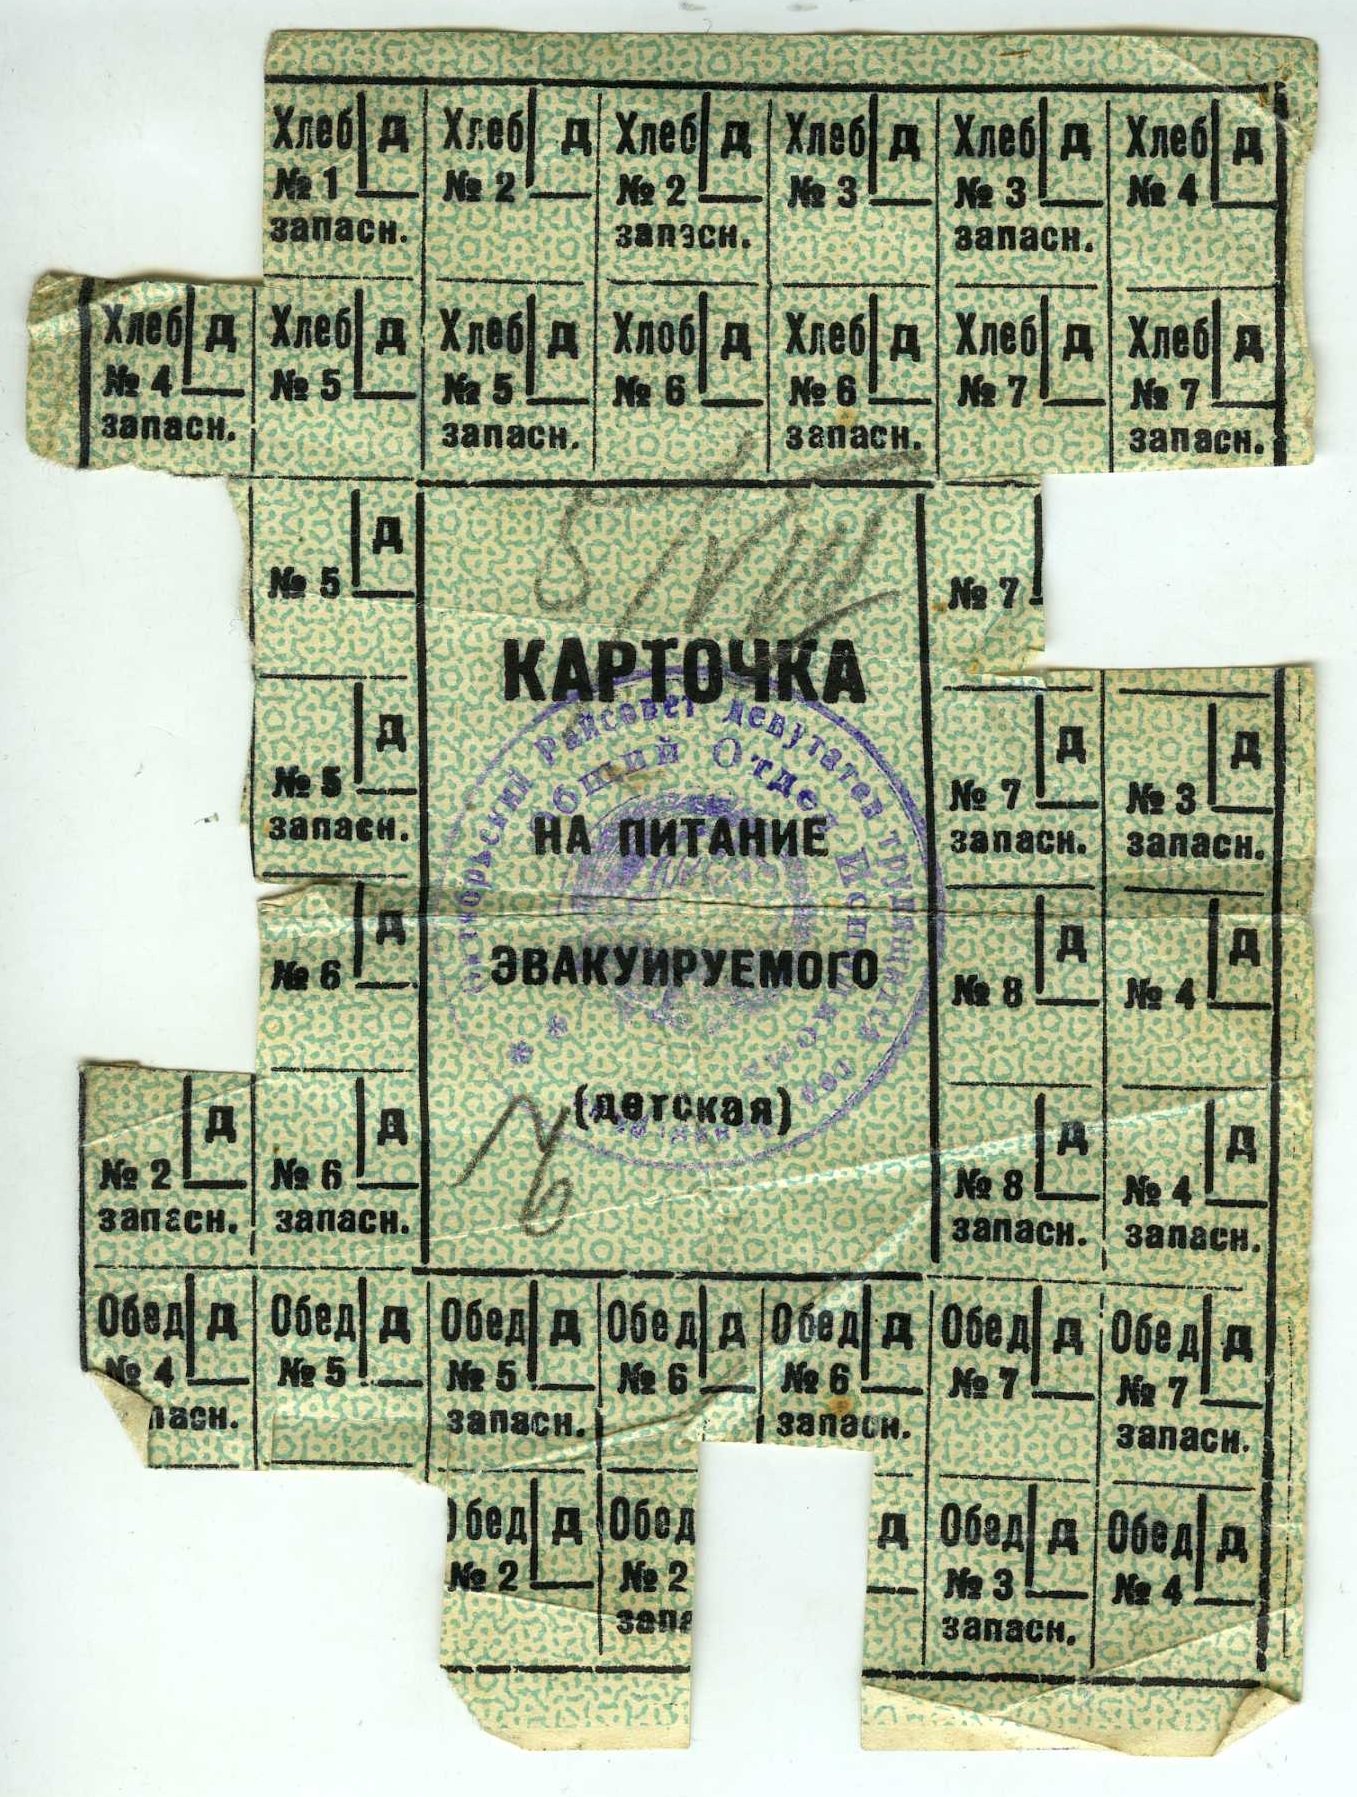 ГАТО. Ф. Р-2008. Оп. 1. Д. 2. Л. 2. Карточка на питание эвакуируемого (детская).1942